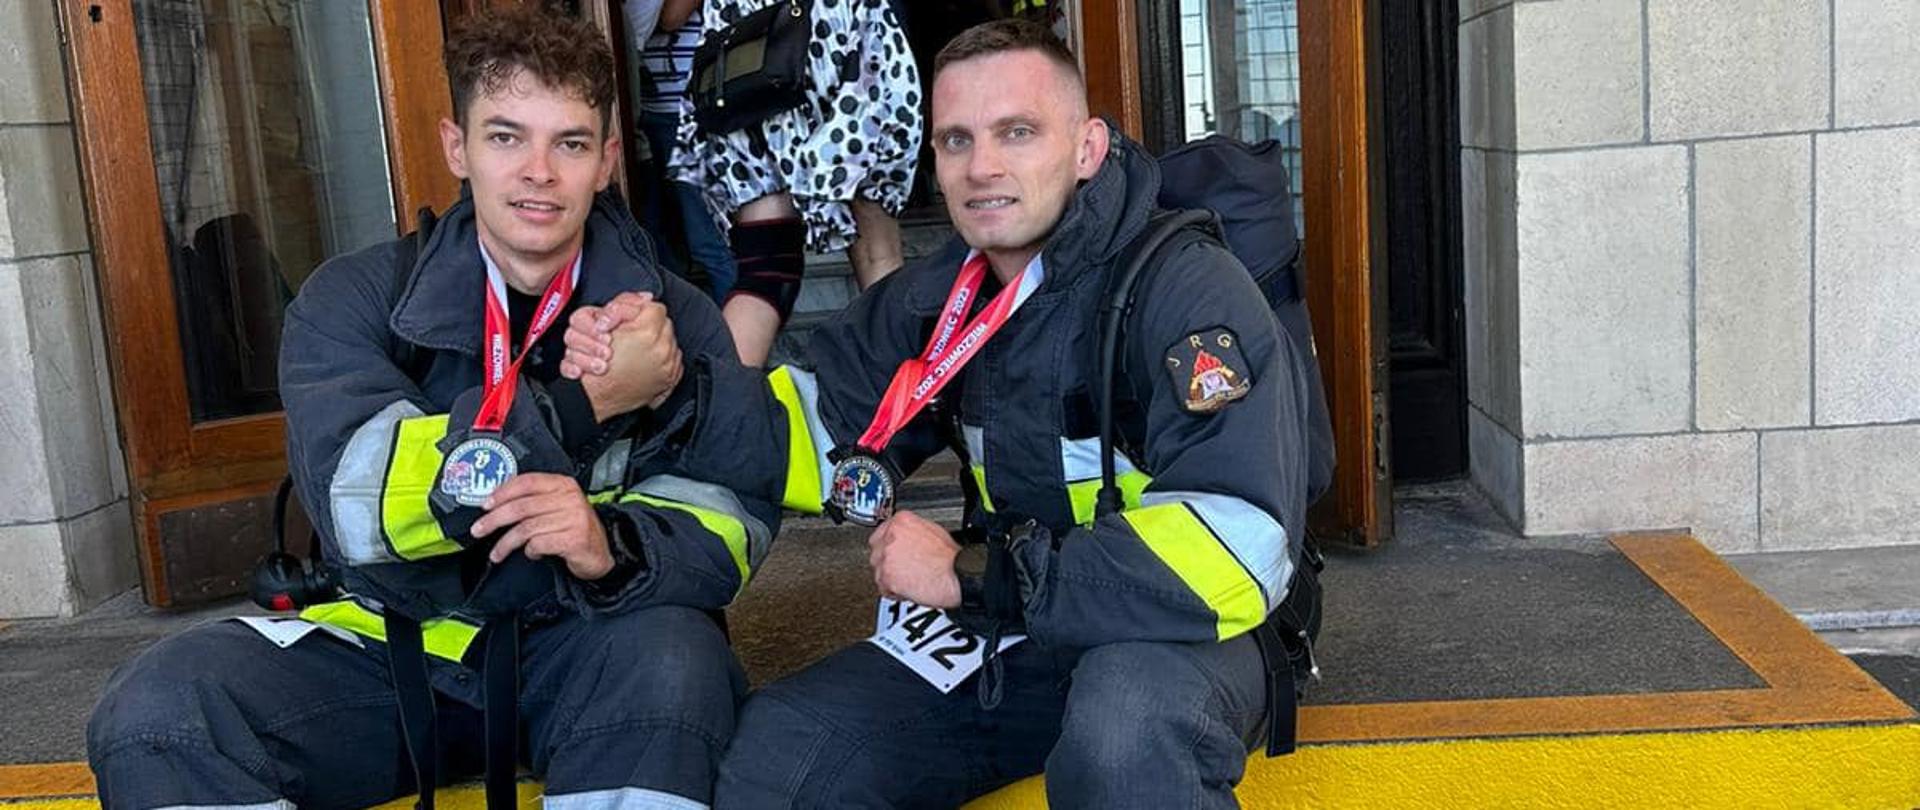 Dwóch strażaków po zakończeniu biegu po schodach siedzi z medalami na szyjach